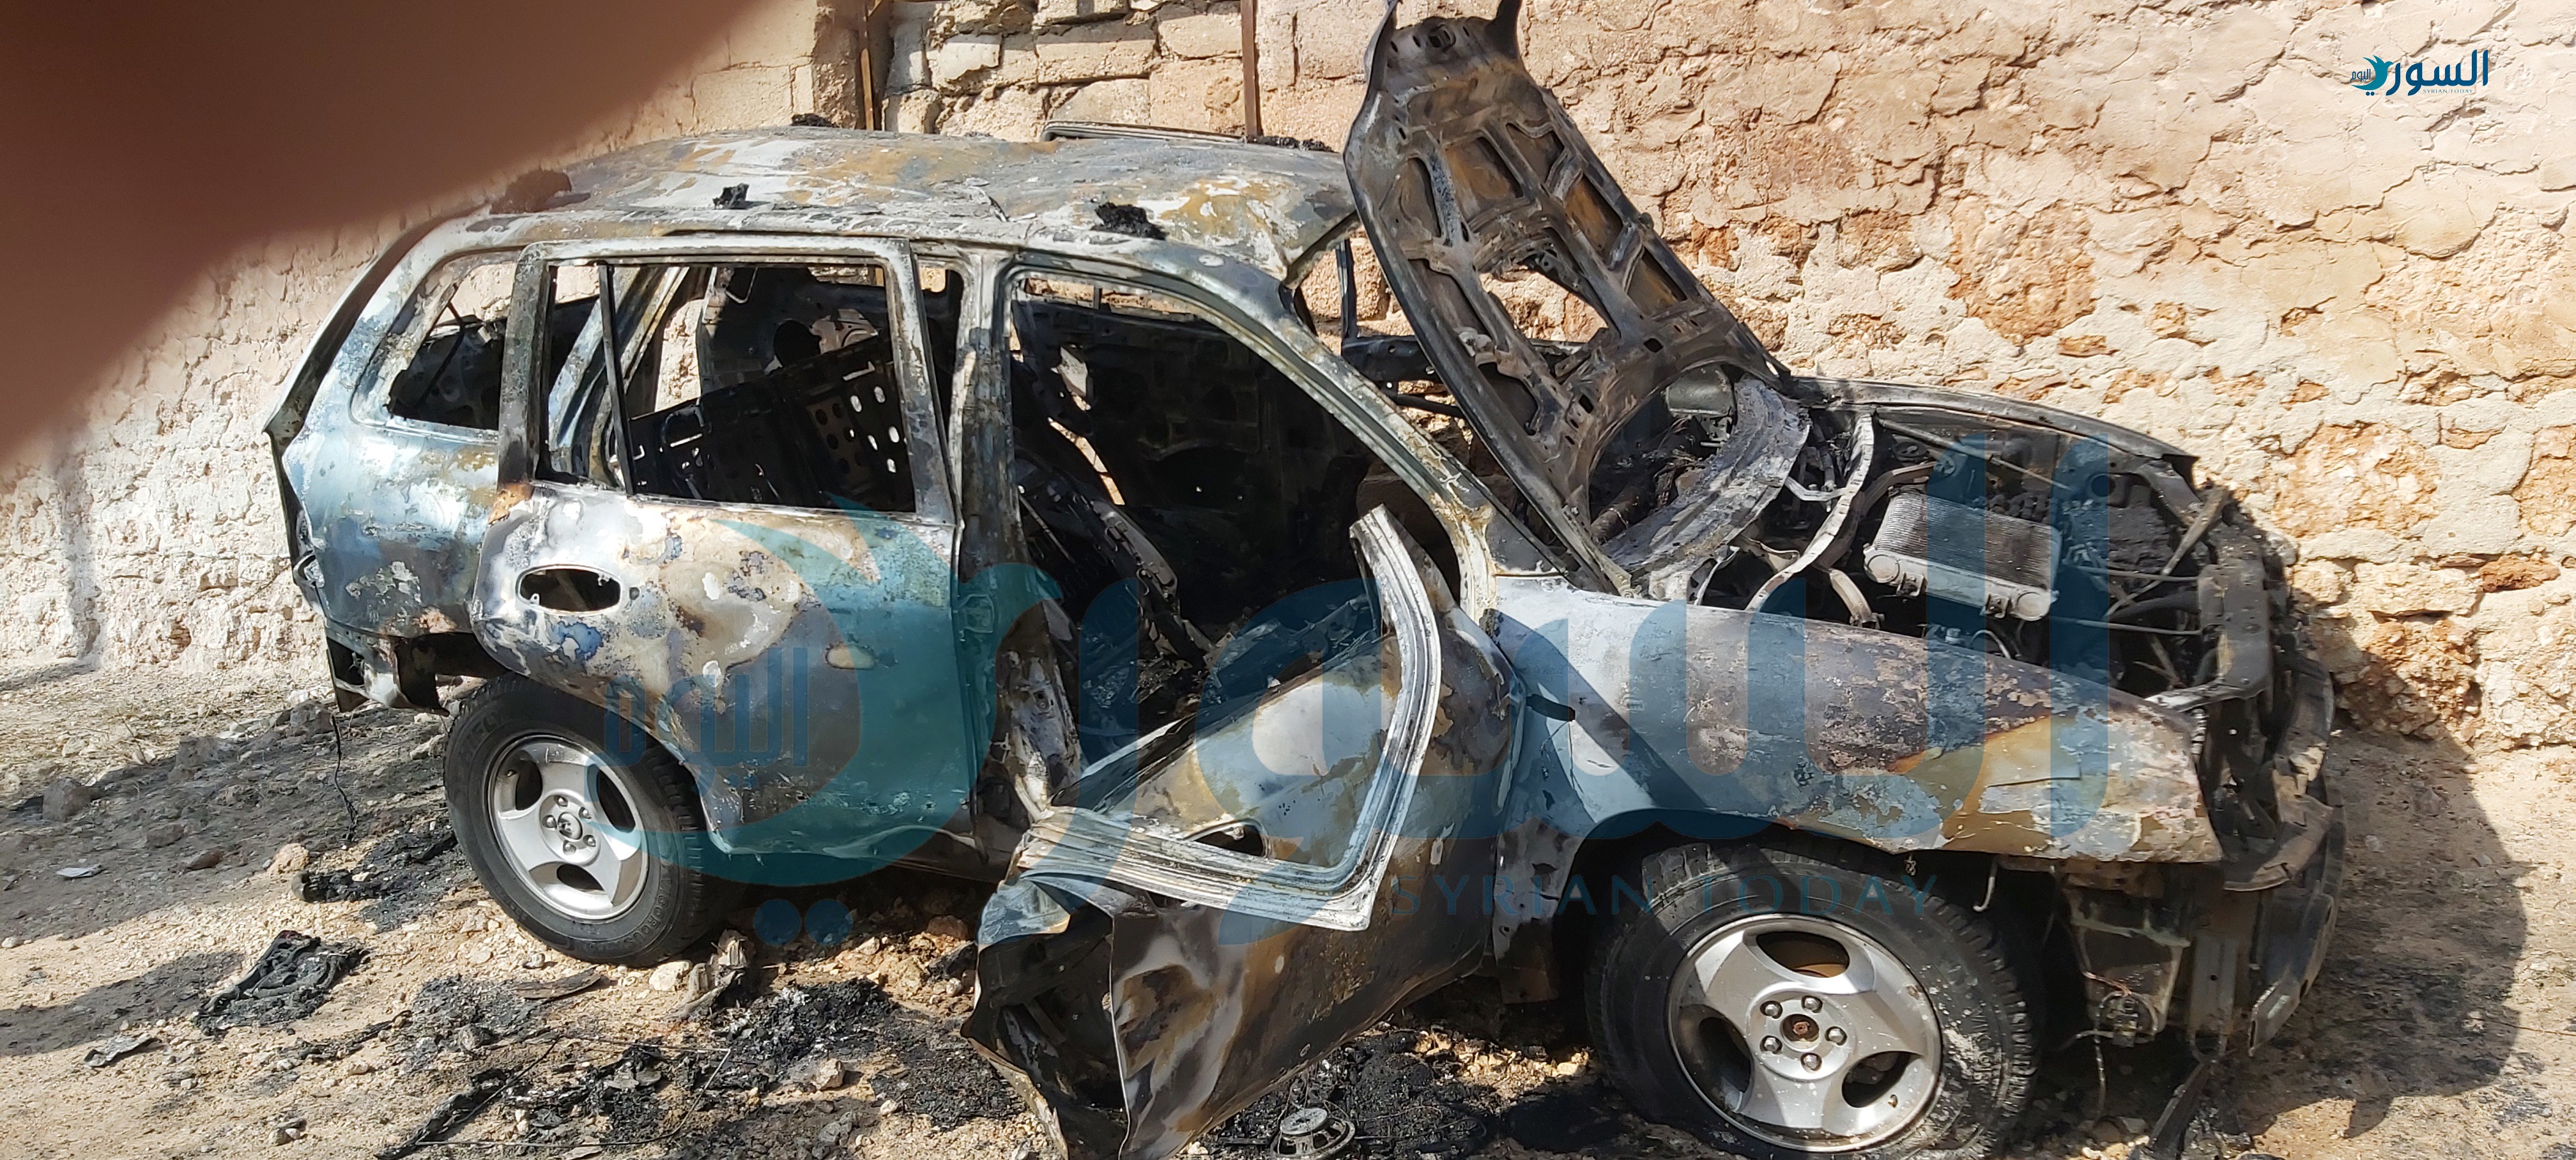 السيارة التي تم استهدافها بعبوة ناسفة (خاص السوري اليوم)